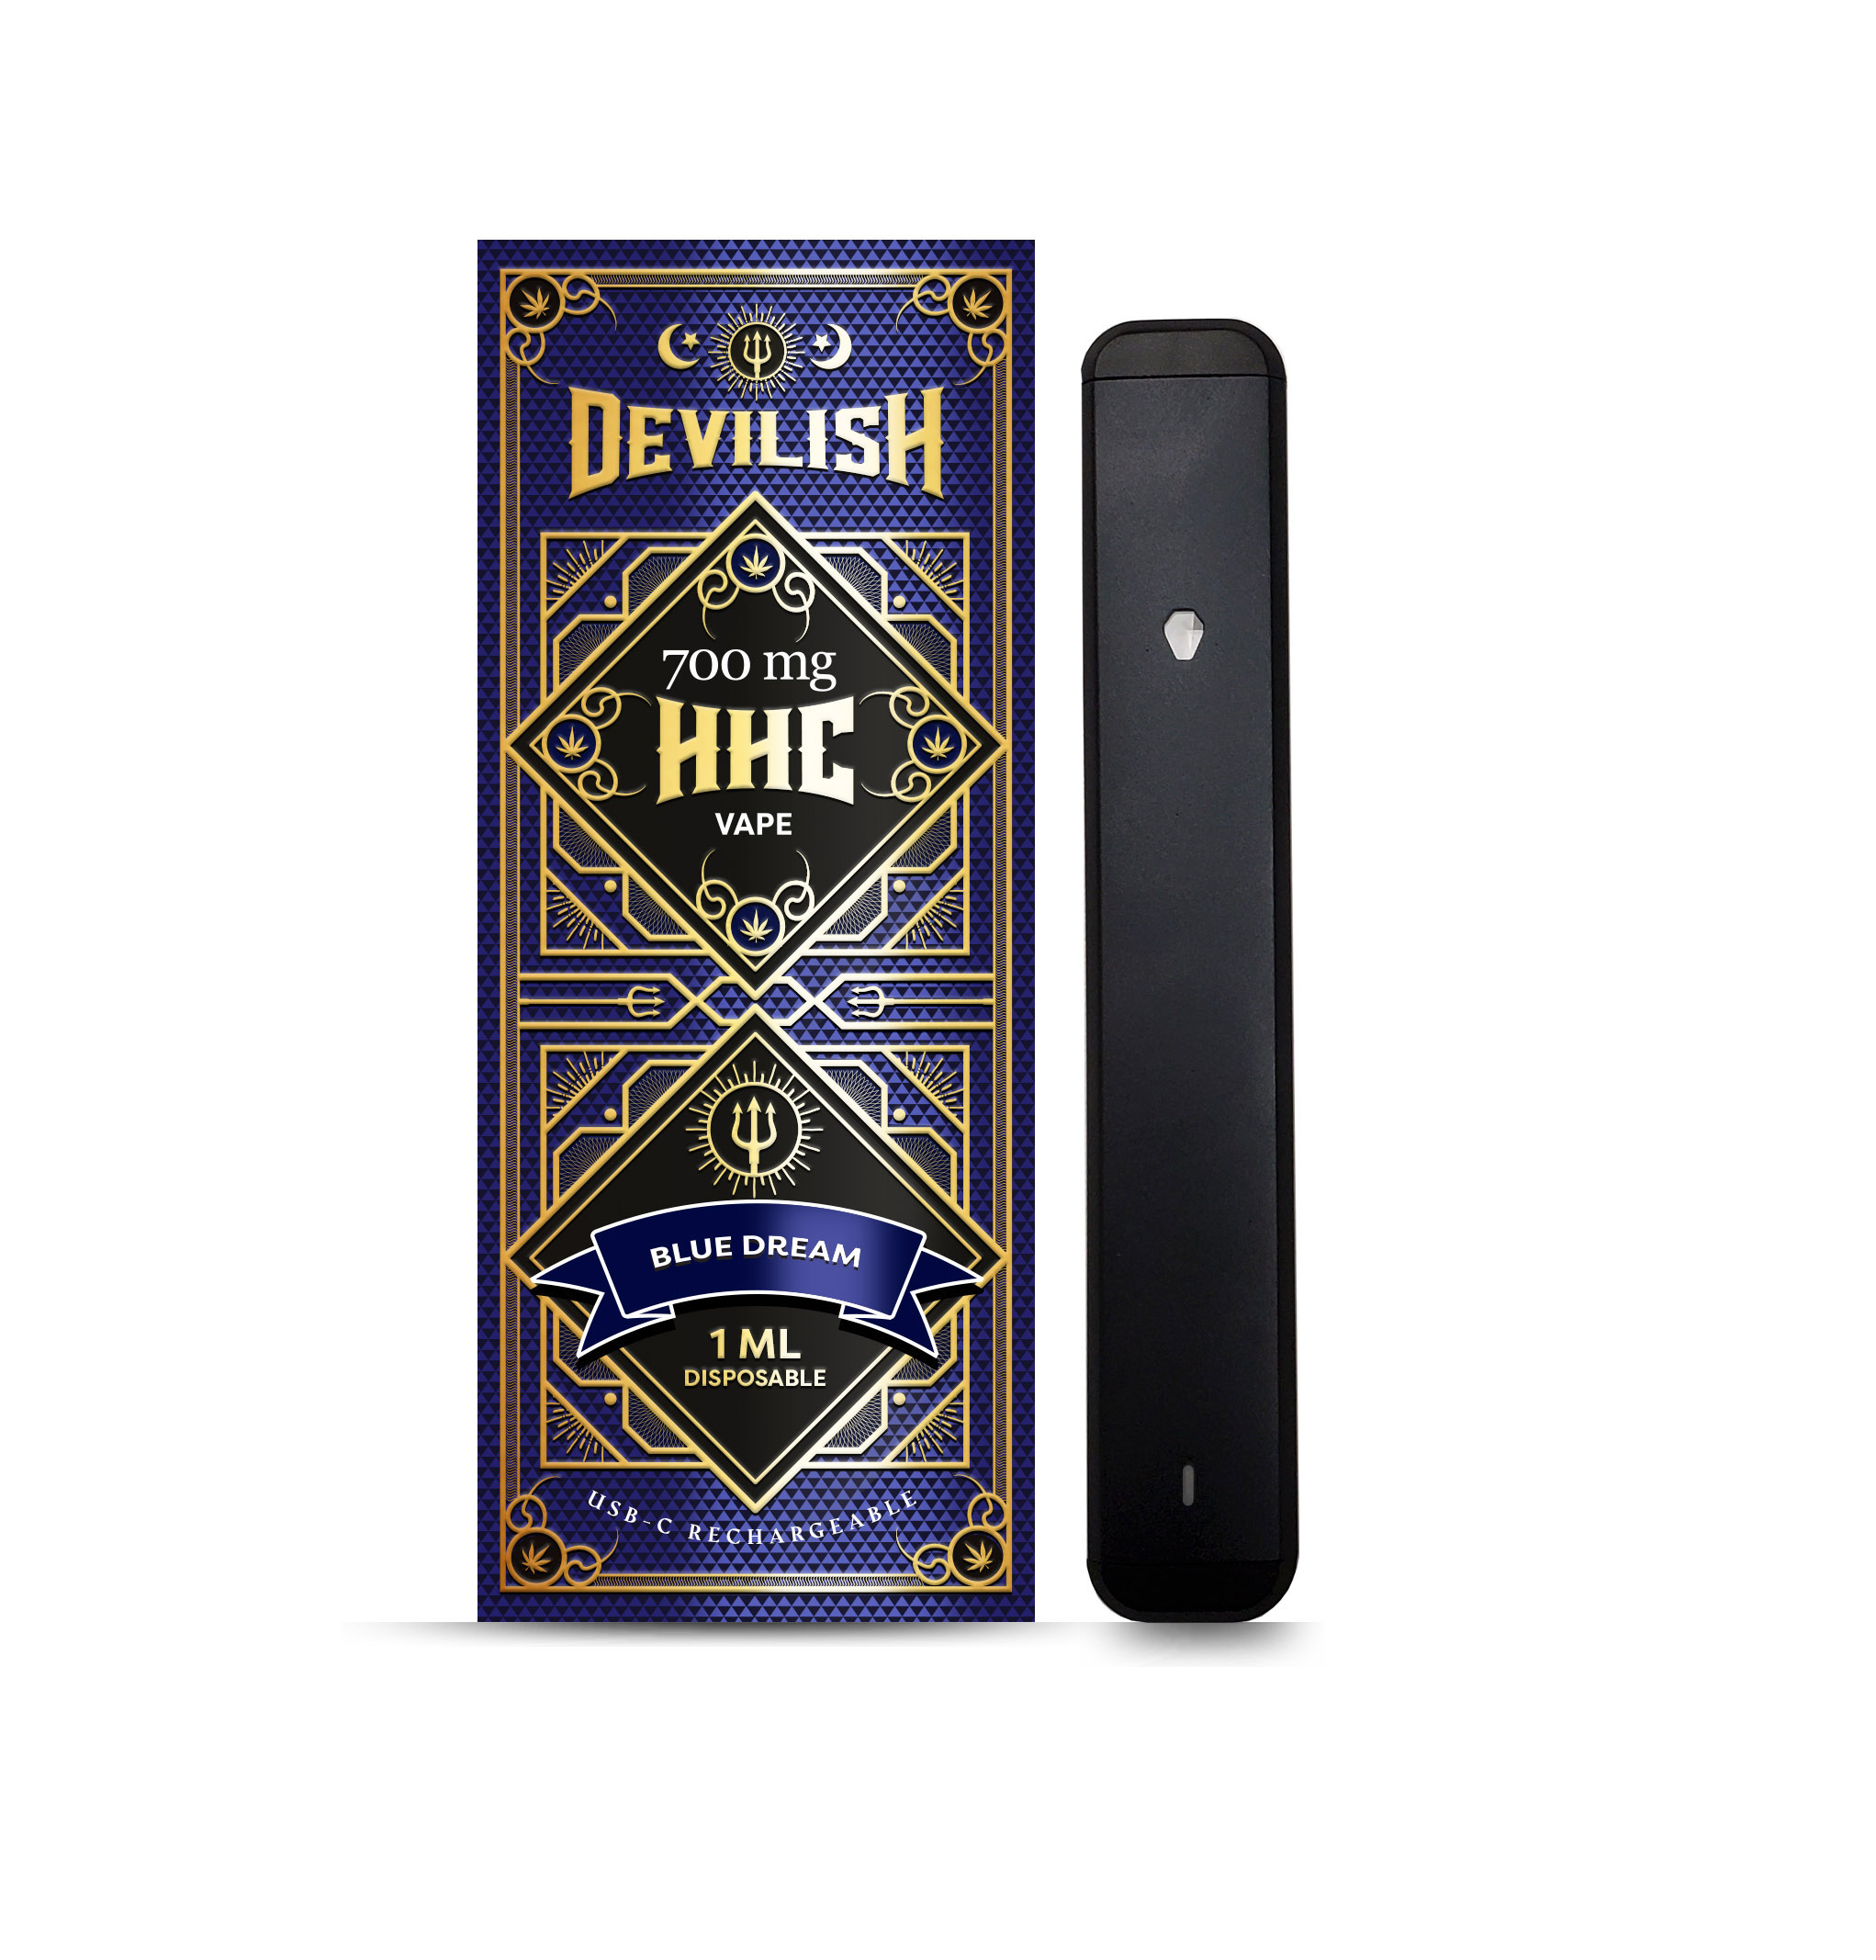 Devilish 700mg HHC Disposable Vape Pen, Blue Dream